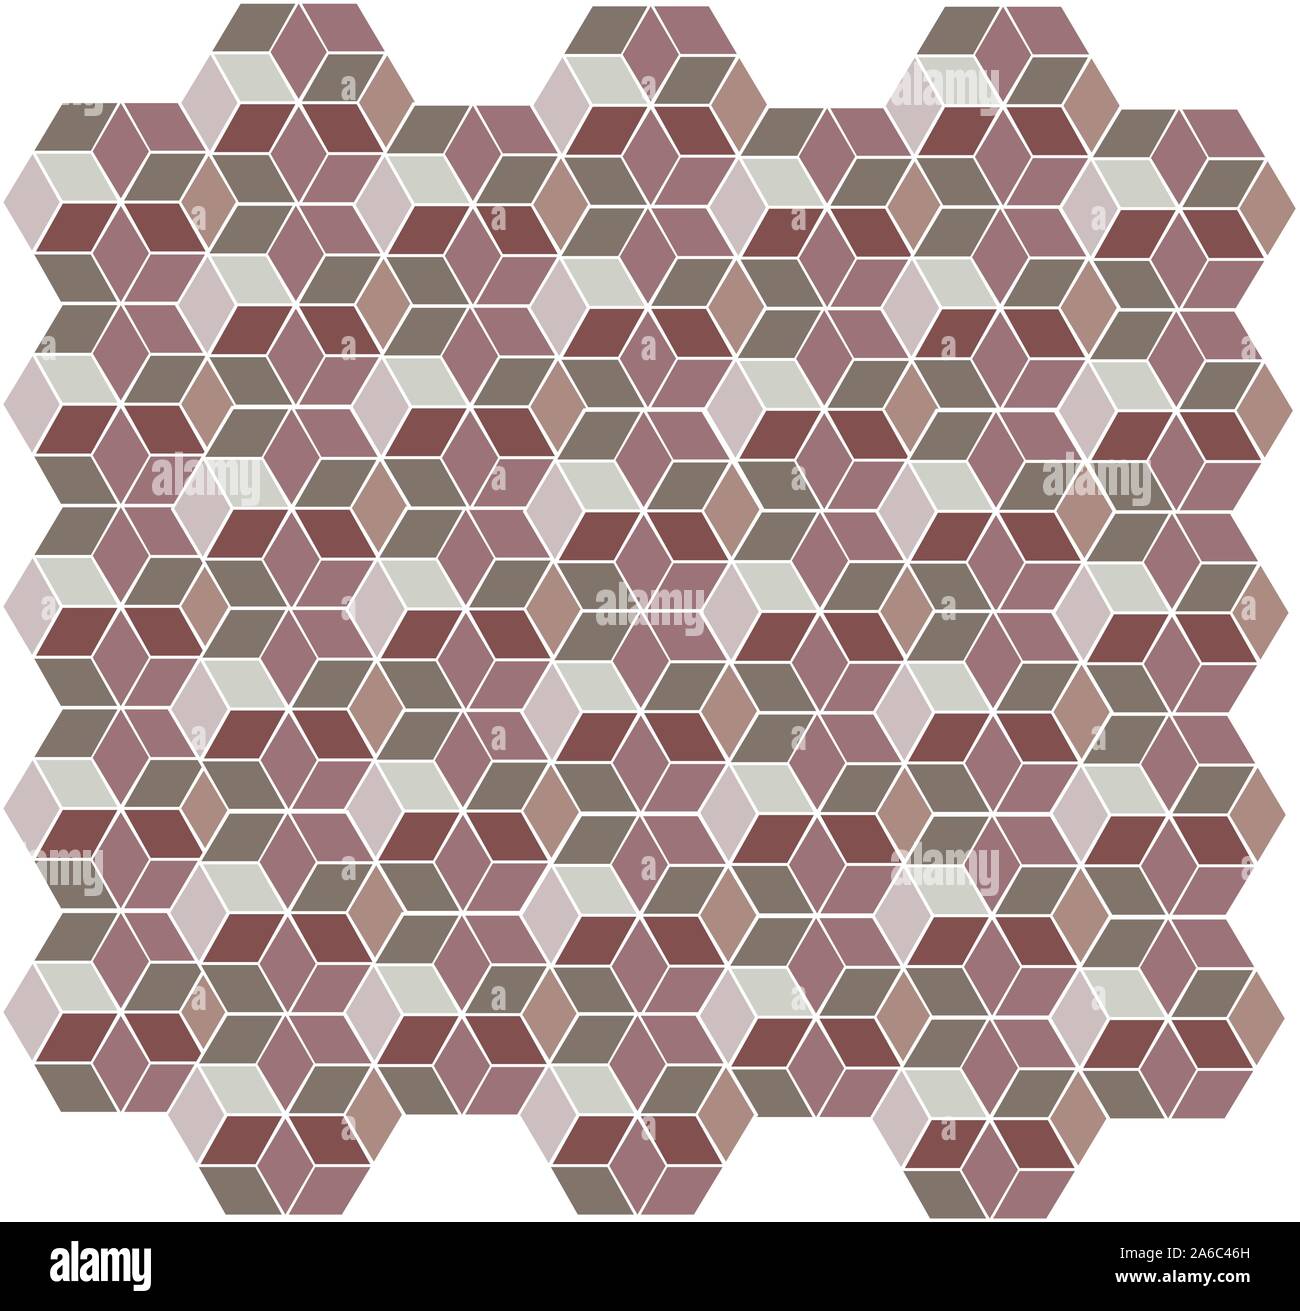 Hexagonale transparente, modèle mosaïque colorée géométrique cubes Illustration de Vecteur